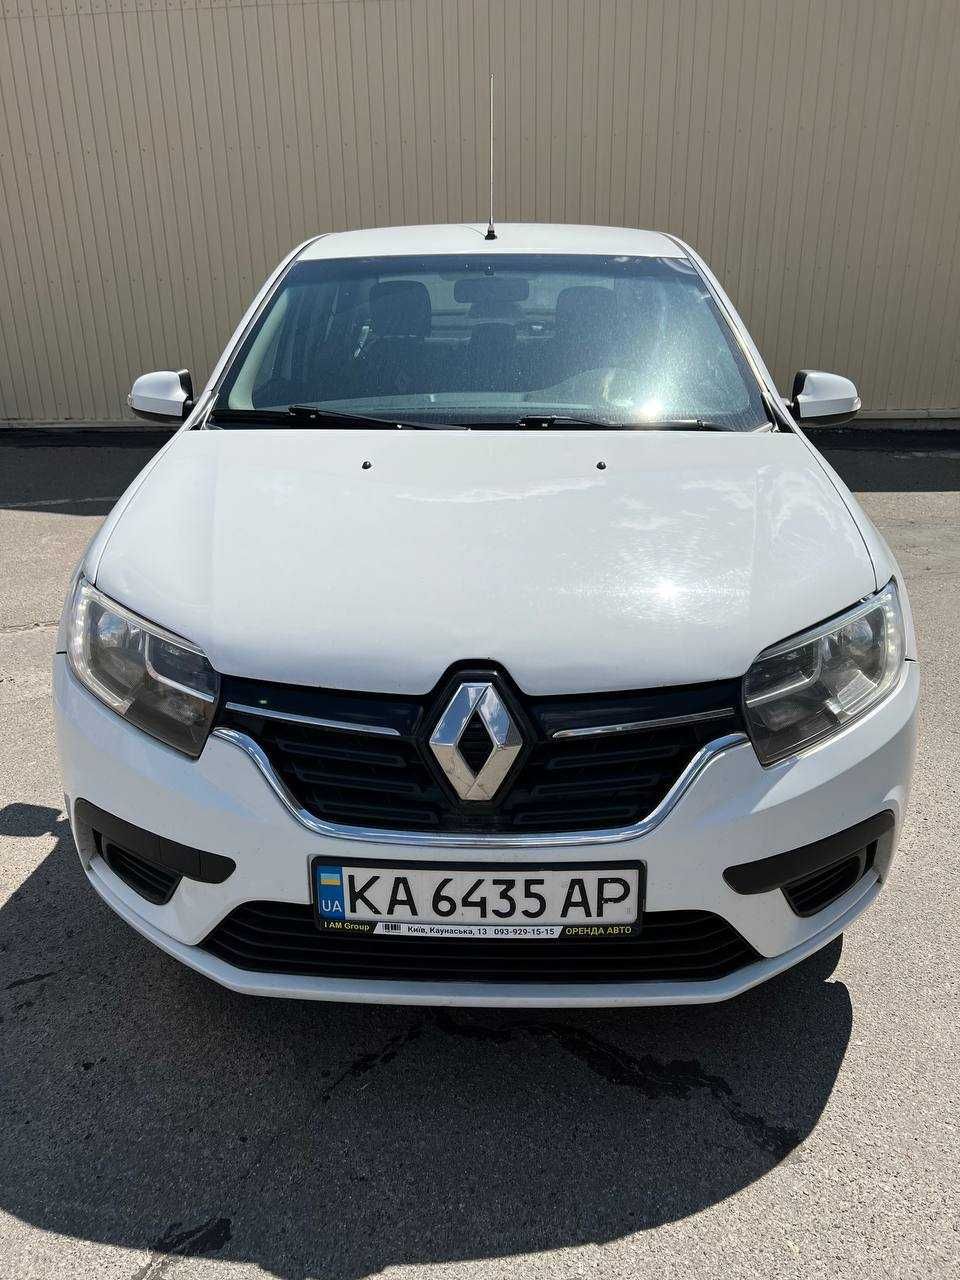 Оренда автомобіля авто під викуп на 1 рік Київ Renault Logan 1.2